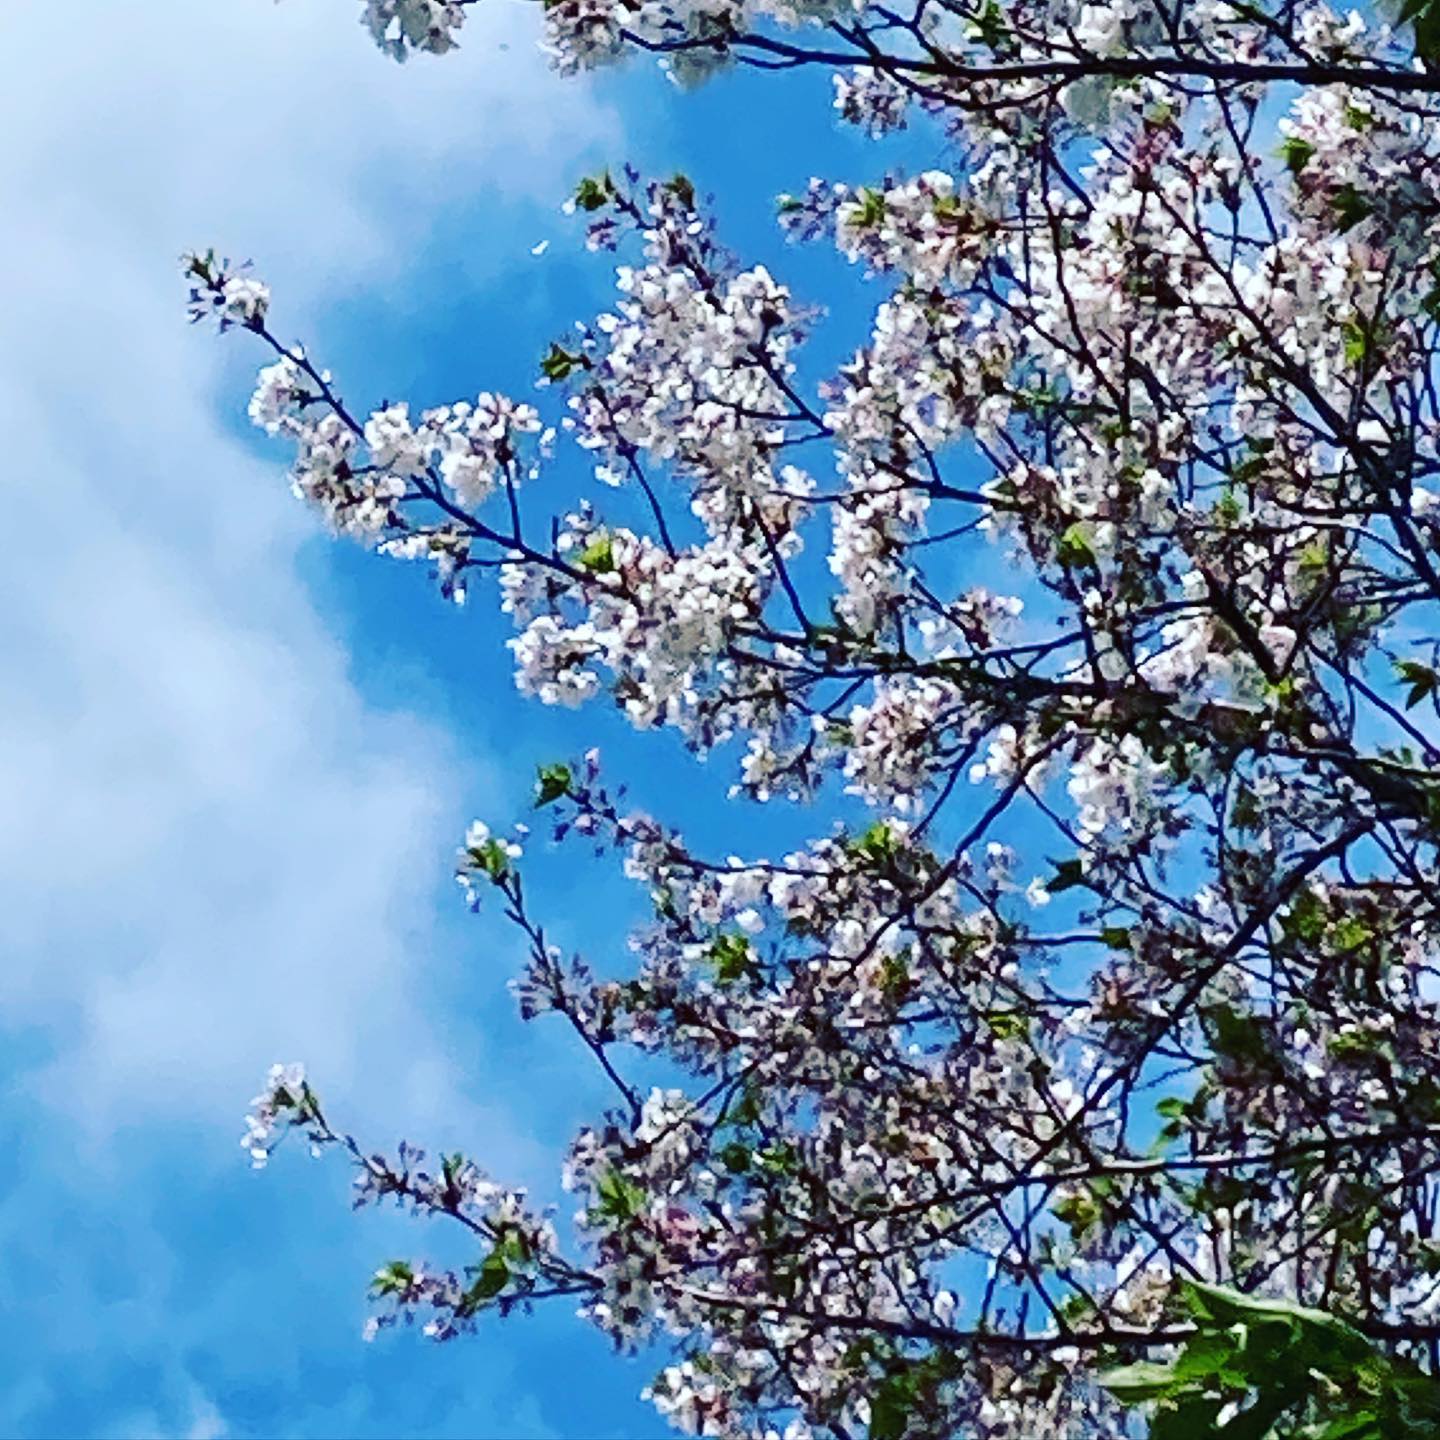 今日（20210405）の桜。@松山市幸町公園昨日の雨に加えて今日は強風。咲いているサクラを探す方が難しくなりました。ご、樹の上の方はまだ健在。しかし、時折吹く風にあおられ、花びらが舞いとびます。今年のサクラもそろそろ見納め、ですね。#松山市 #サクラ #桜 #青空 #舞う花びら